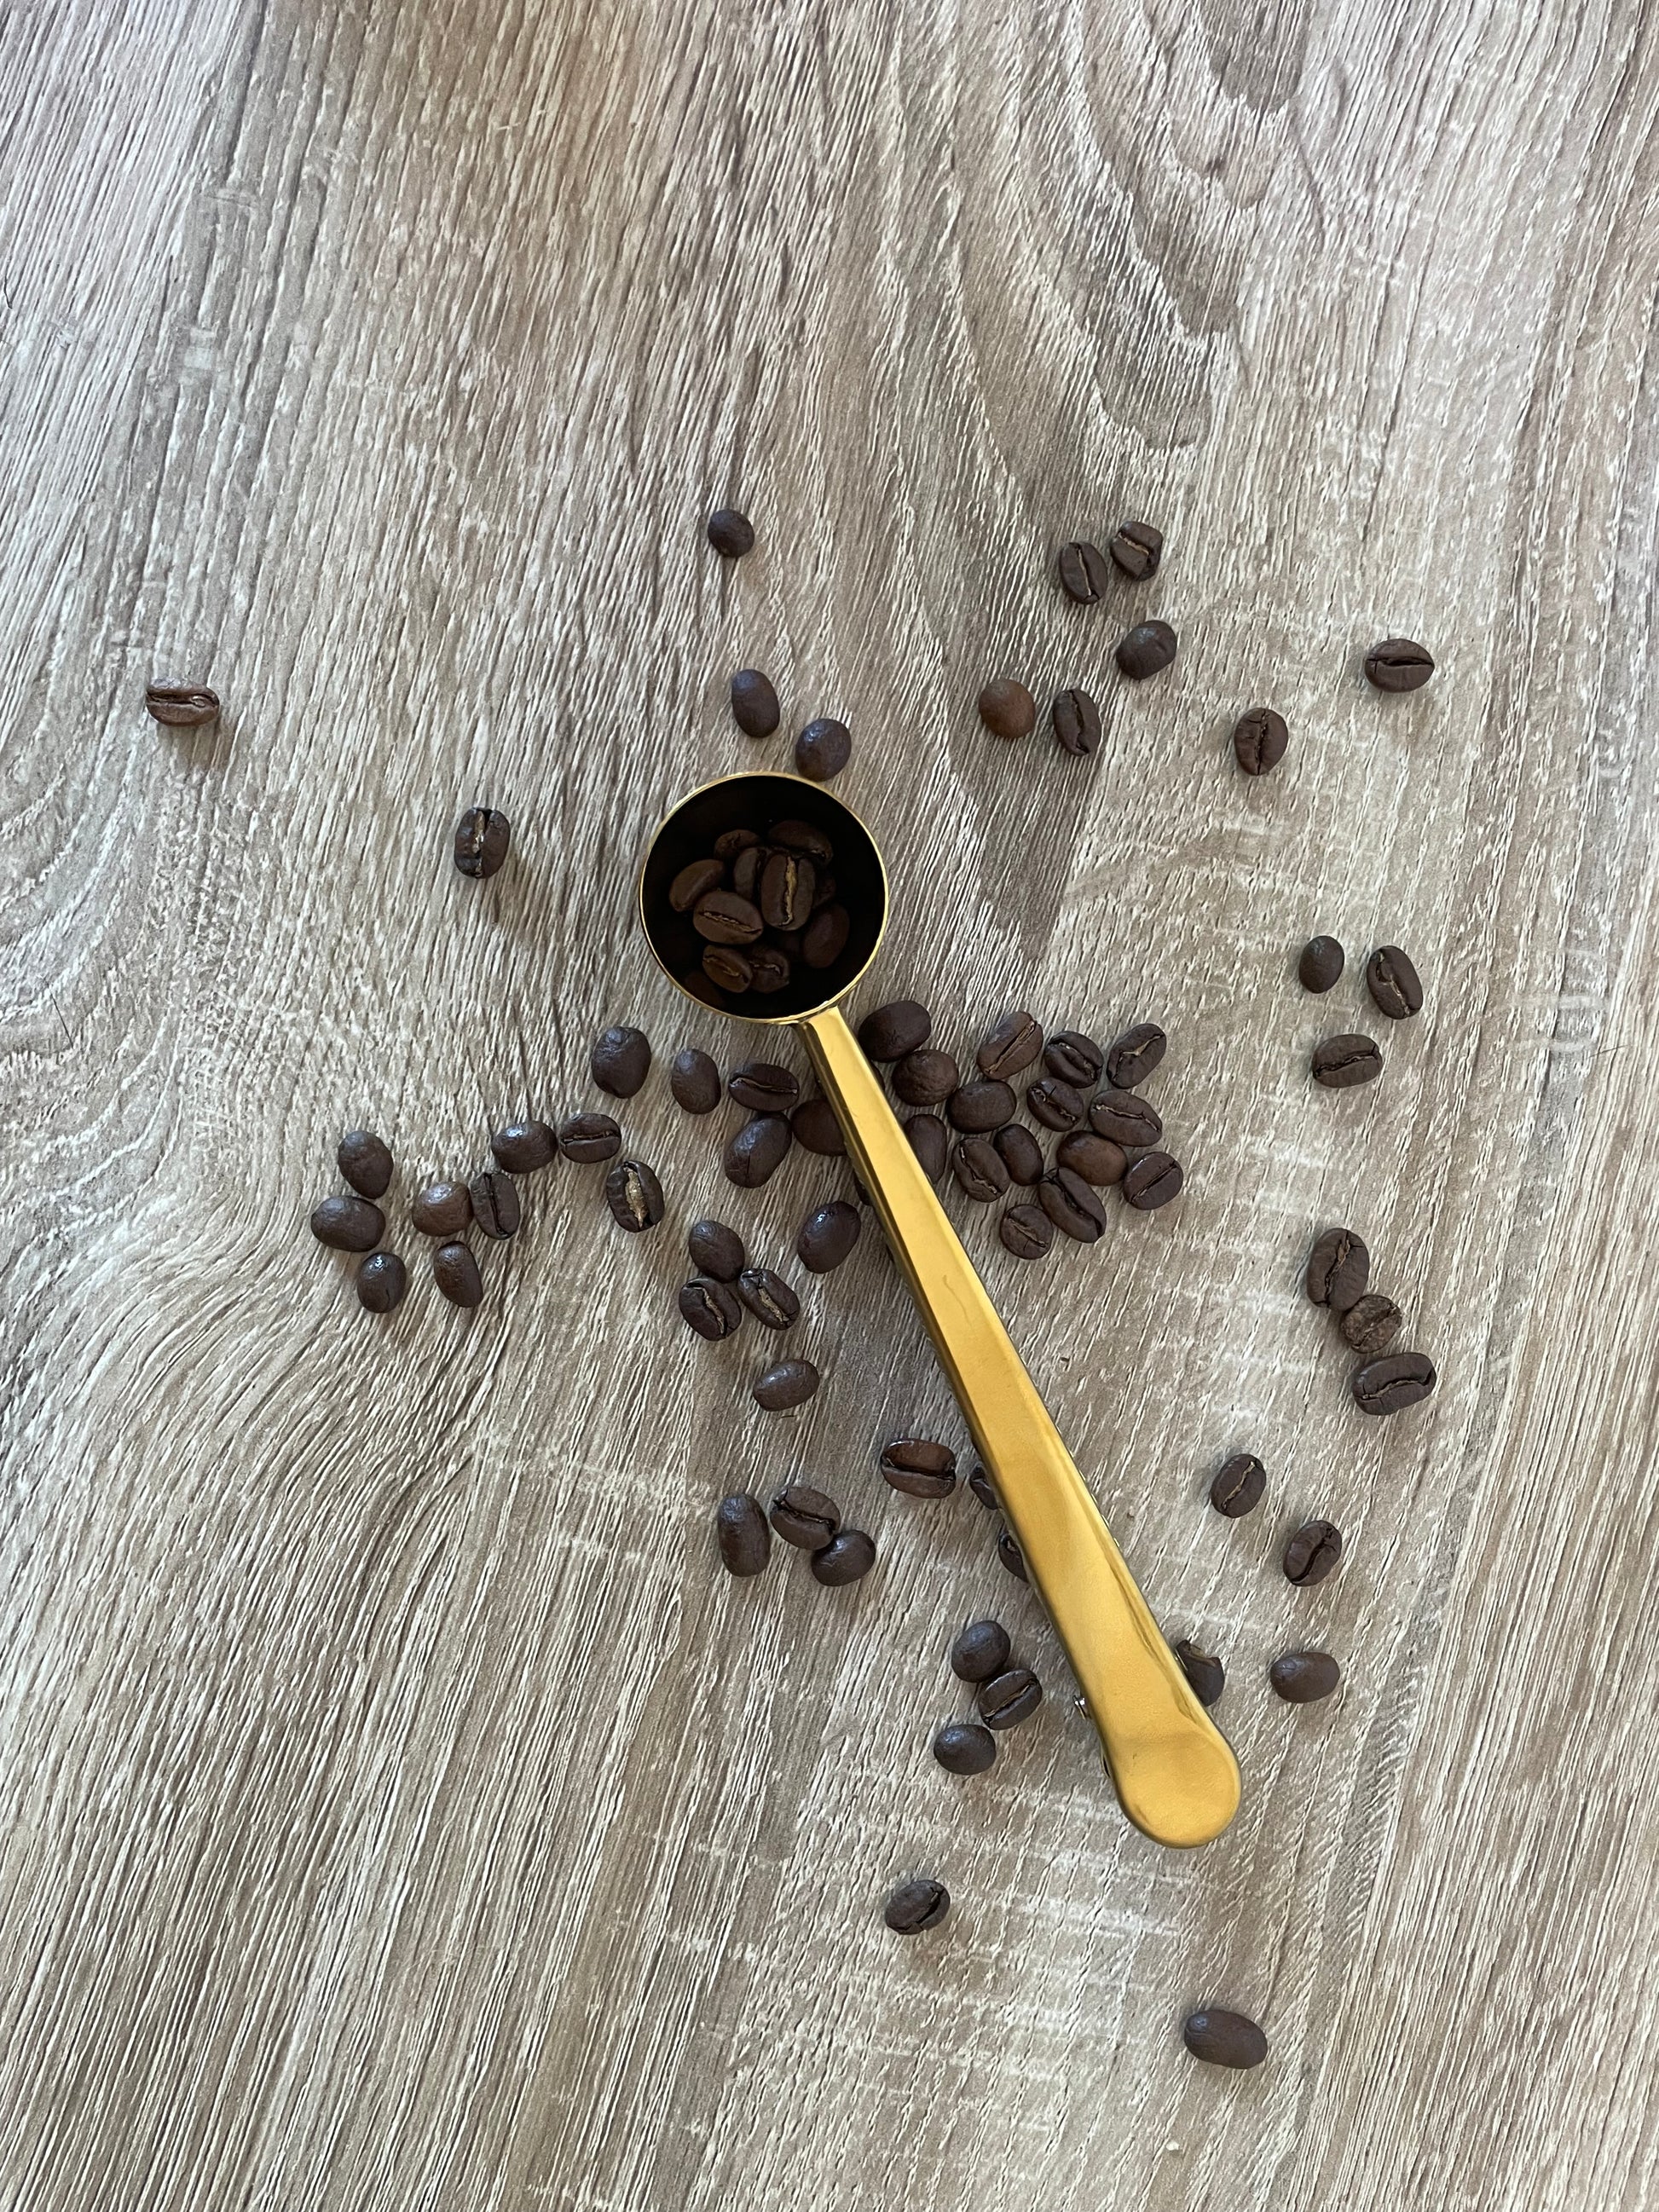 Cuillère doseuse (cuillère à mesurer) pour café moulu noir pour